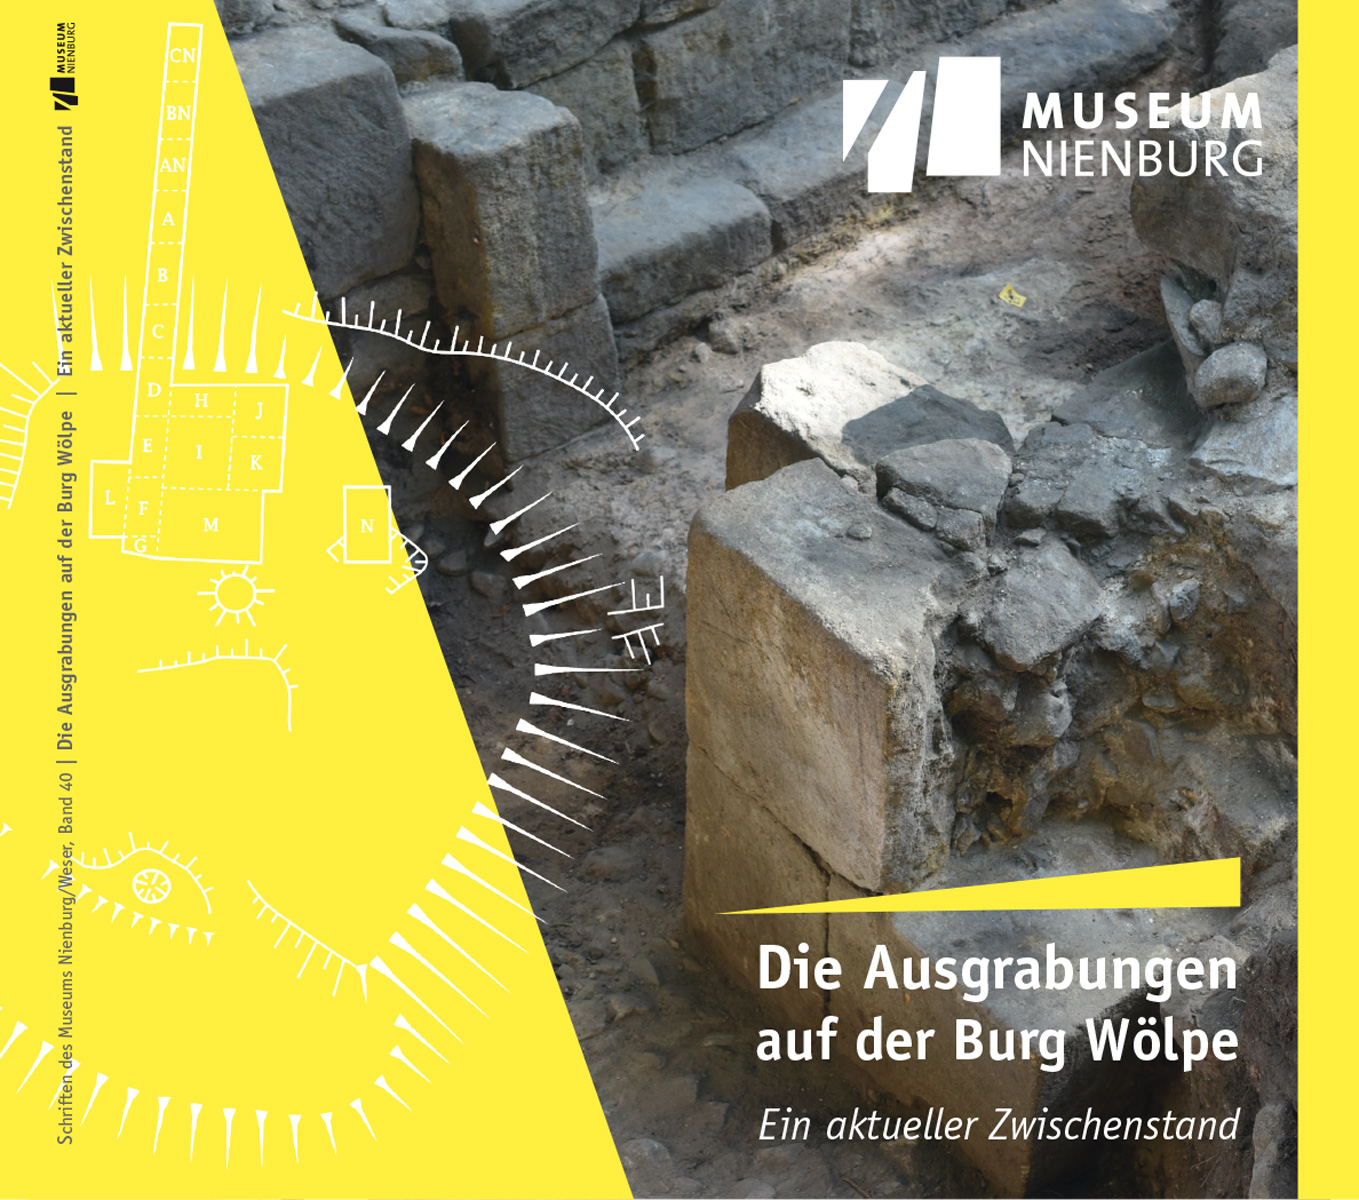 Buch: Ausgrabungen Burg Wölpe Museum Nienburg